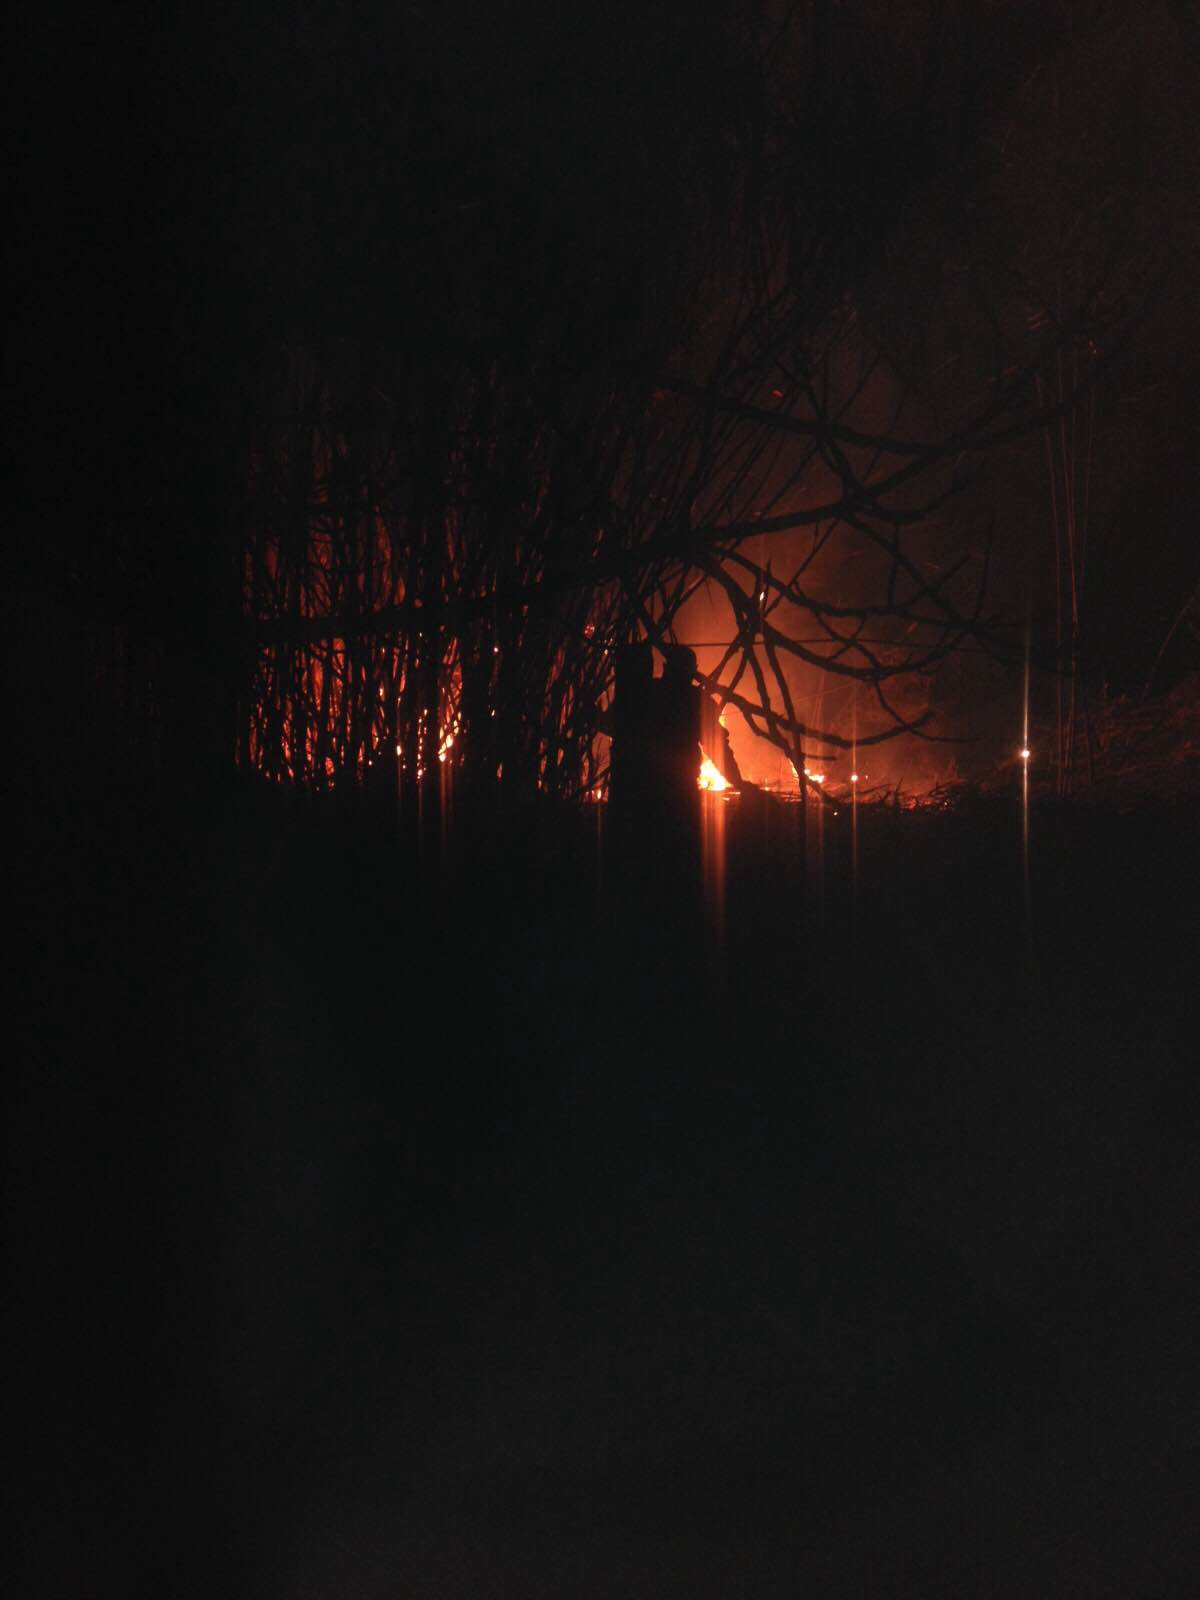 Capodanno di fuoco a Quiesa, incendio nella notte